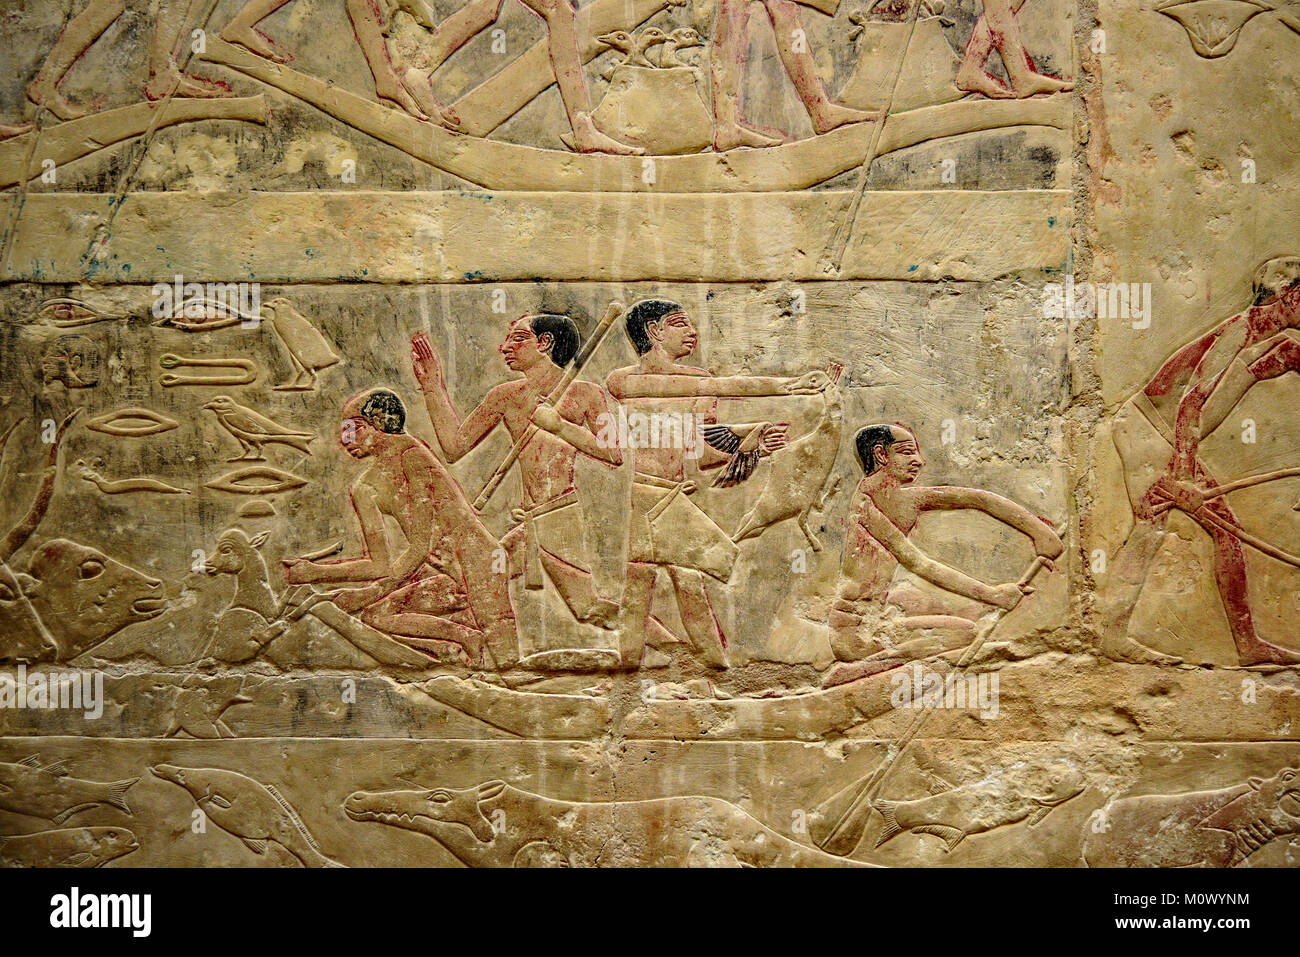 Antica geroglifico egizio carta murale e stele raffigurante lo stile di vita, Giza in Egitto. Foto Stock